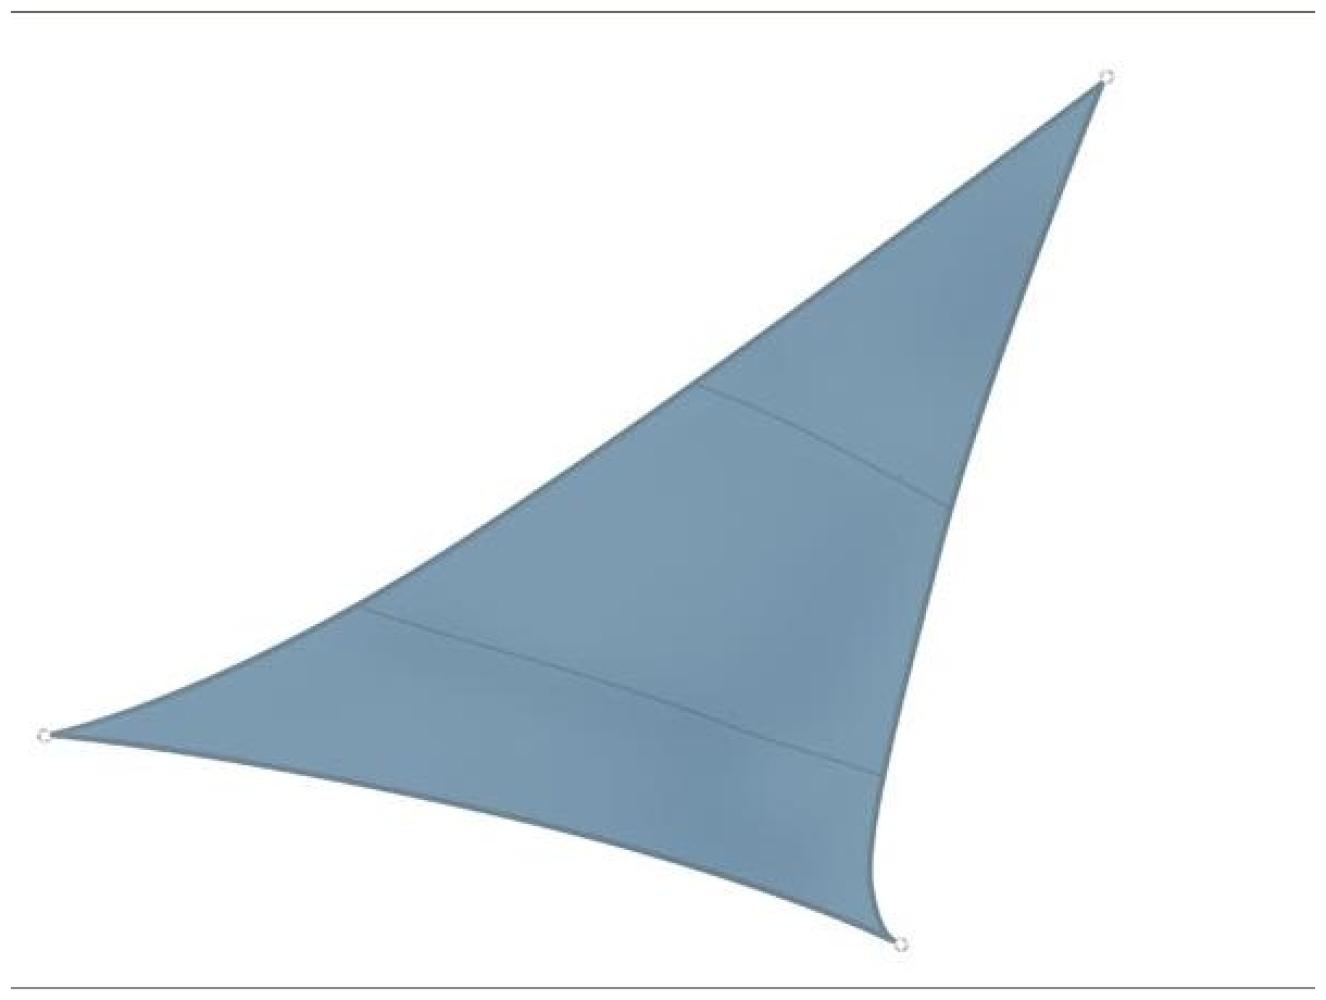 Sonnensegel Dreieck Blaugrau 3,6m - Sonnenschutzsegel für Balkon Terrassensegel Bild 1